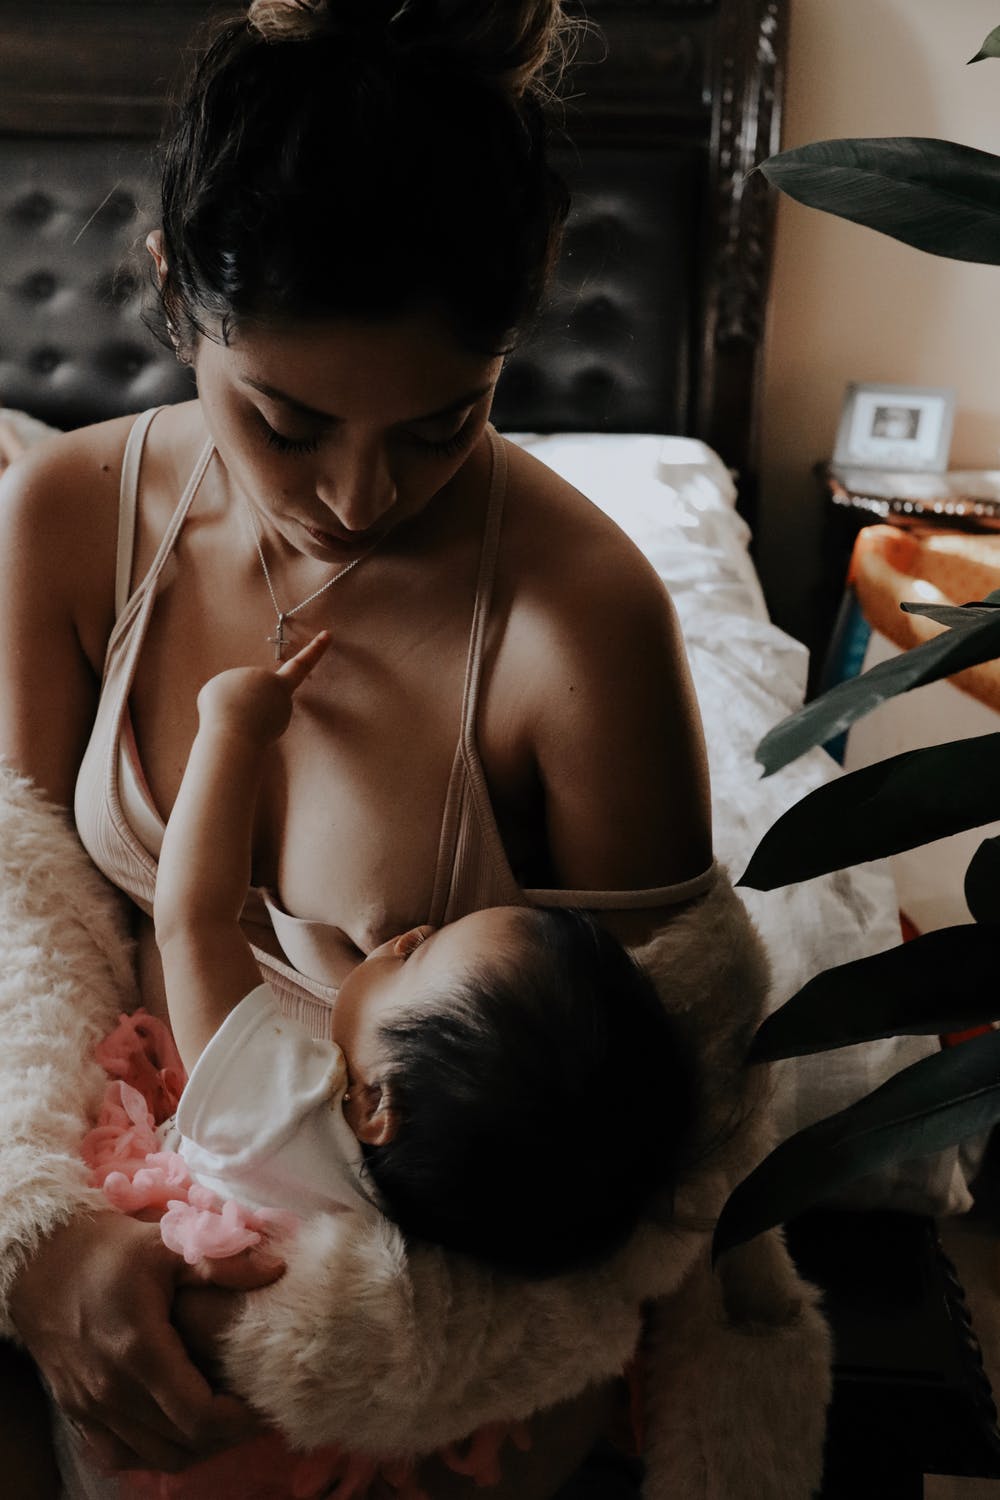 Surviving Breastfeeding At Night